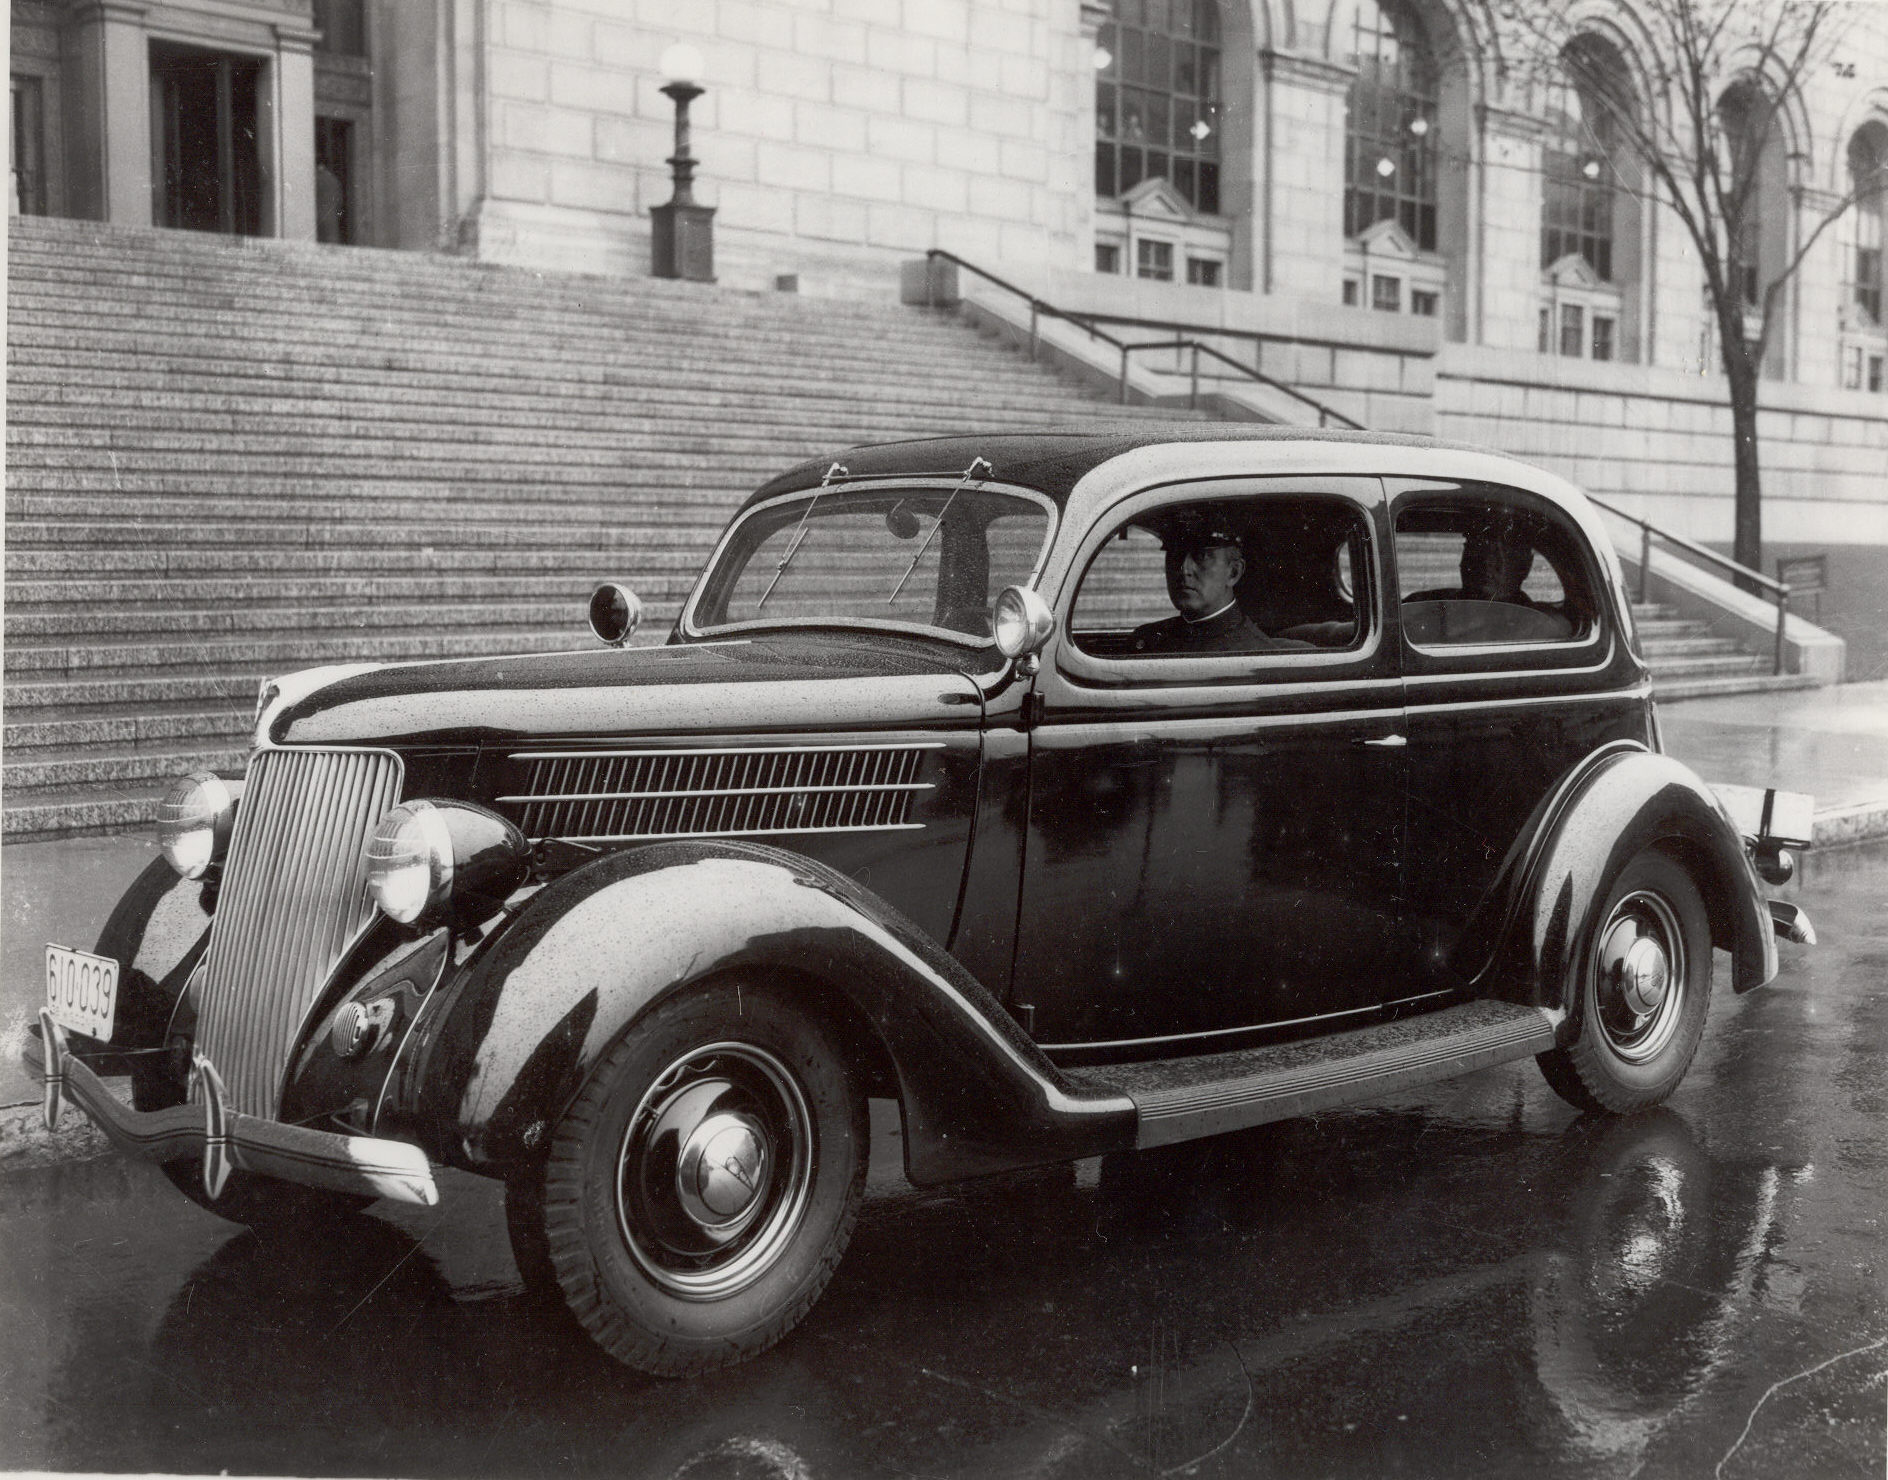 1936 Ford V8